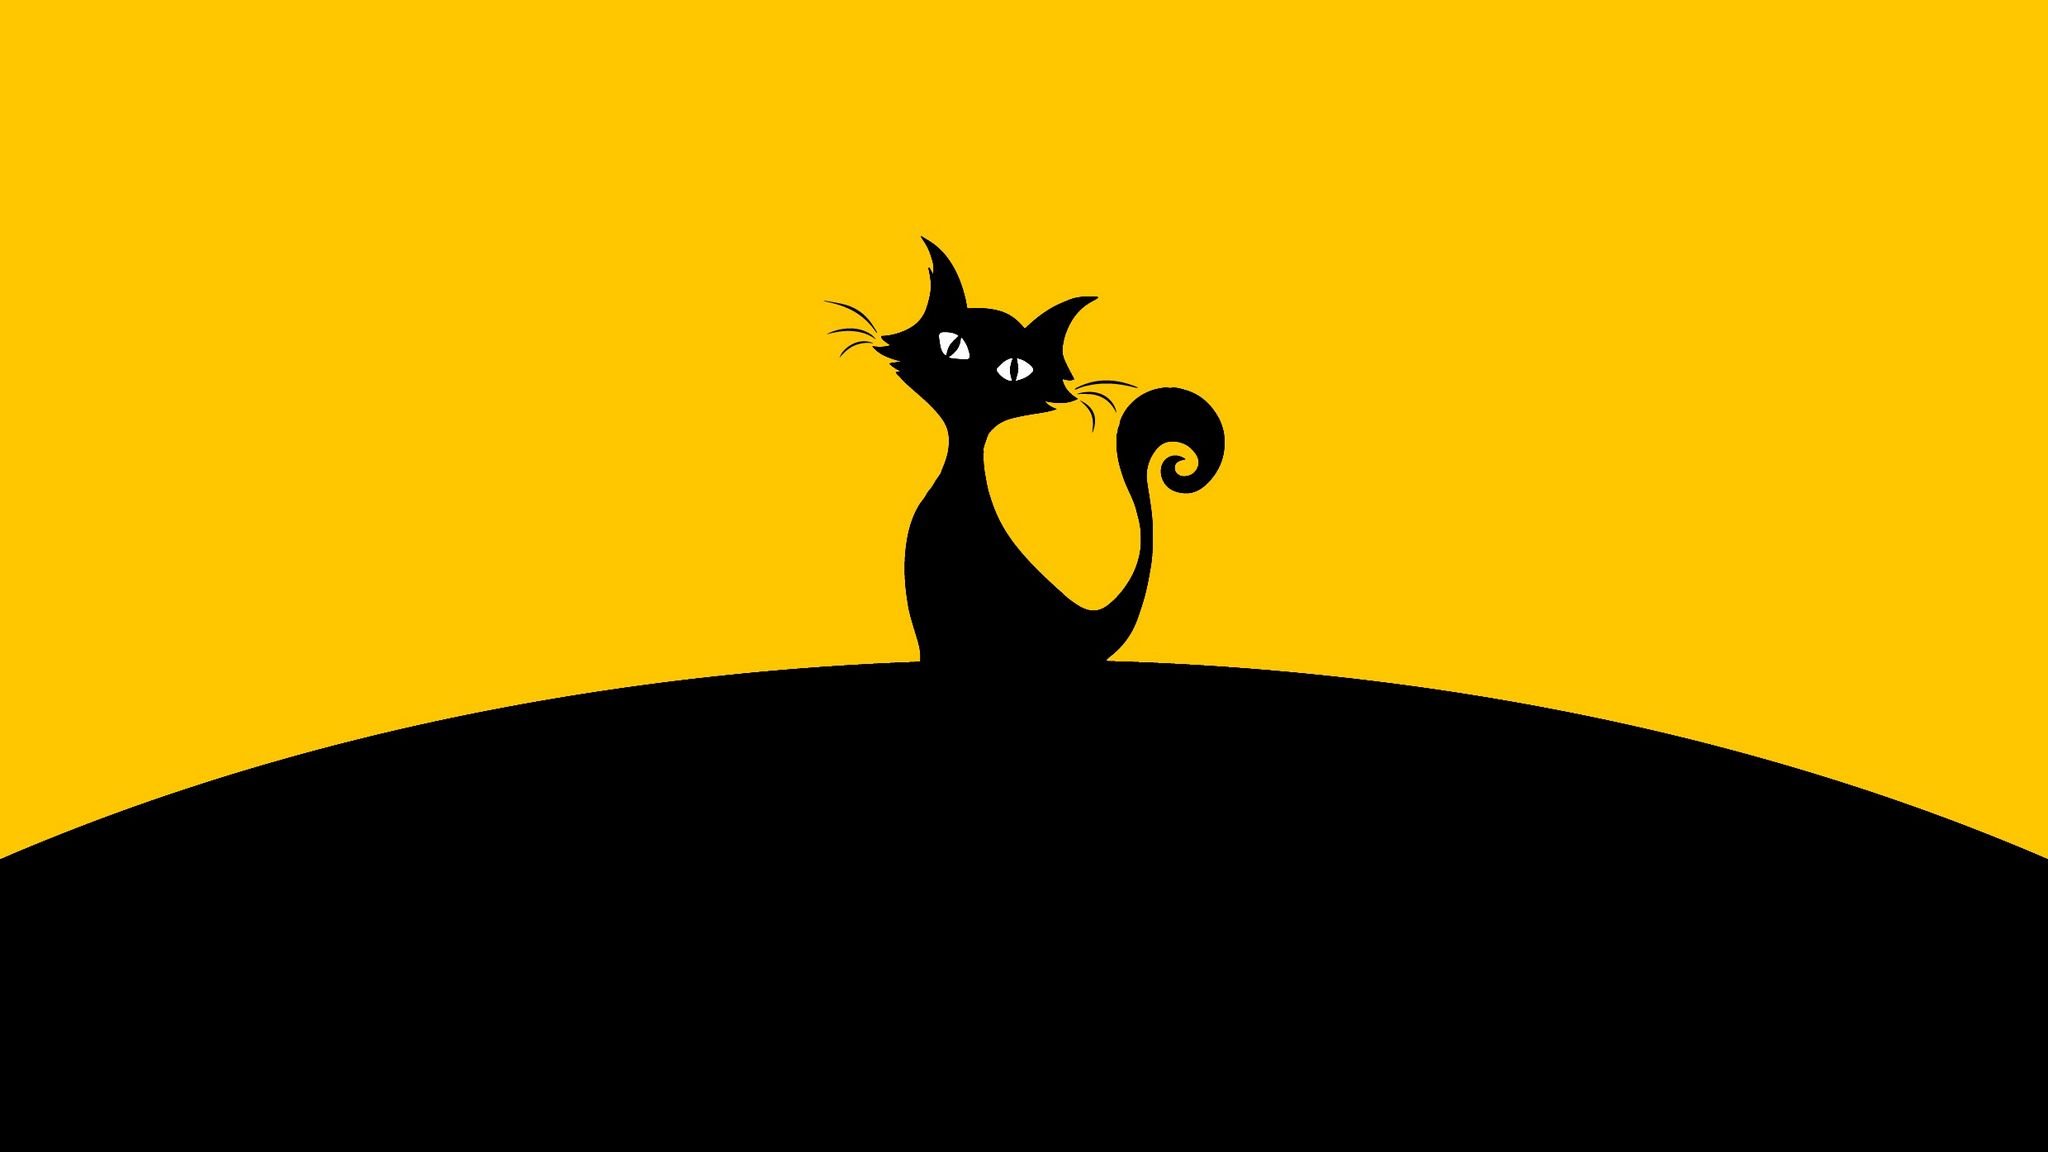 Кошка на желтом фоне